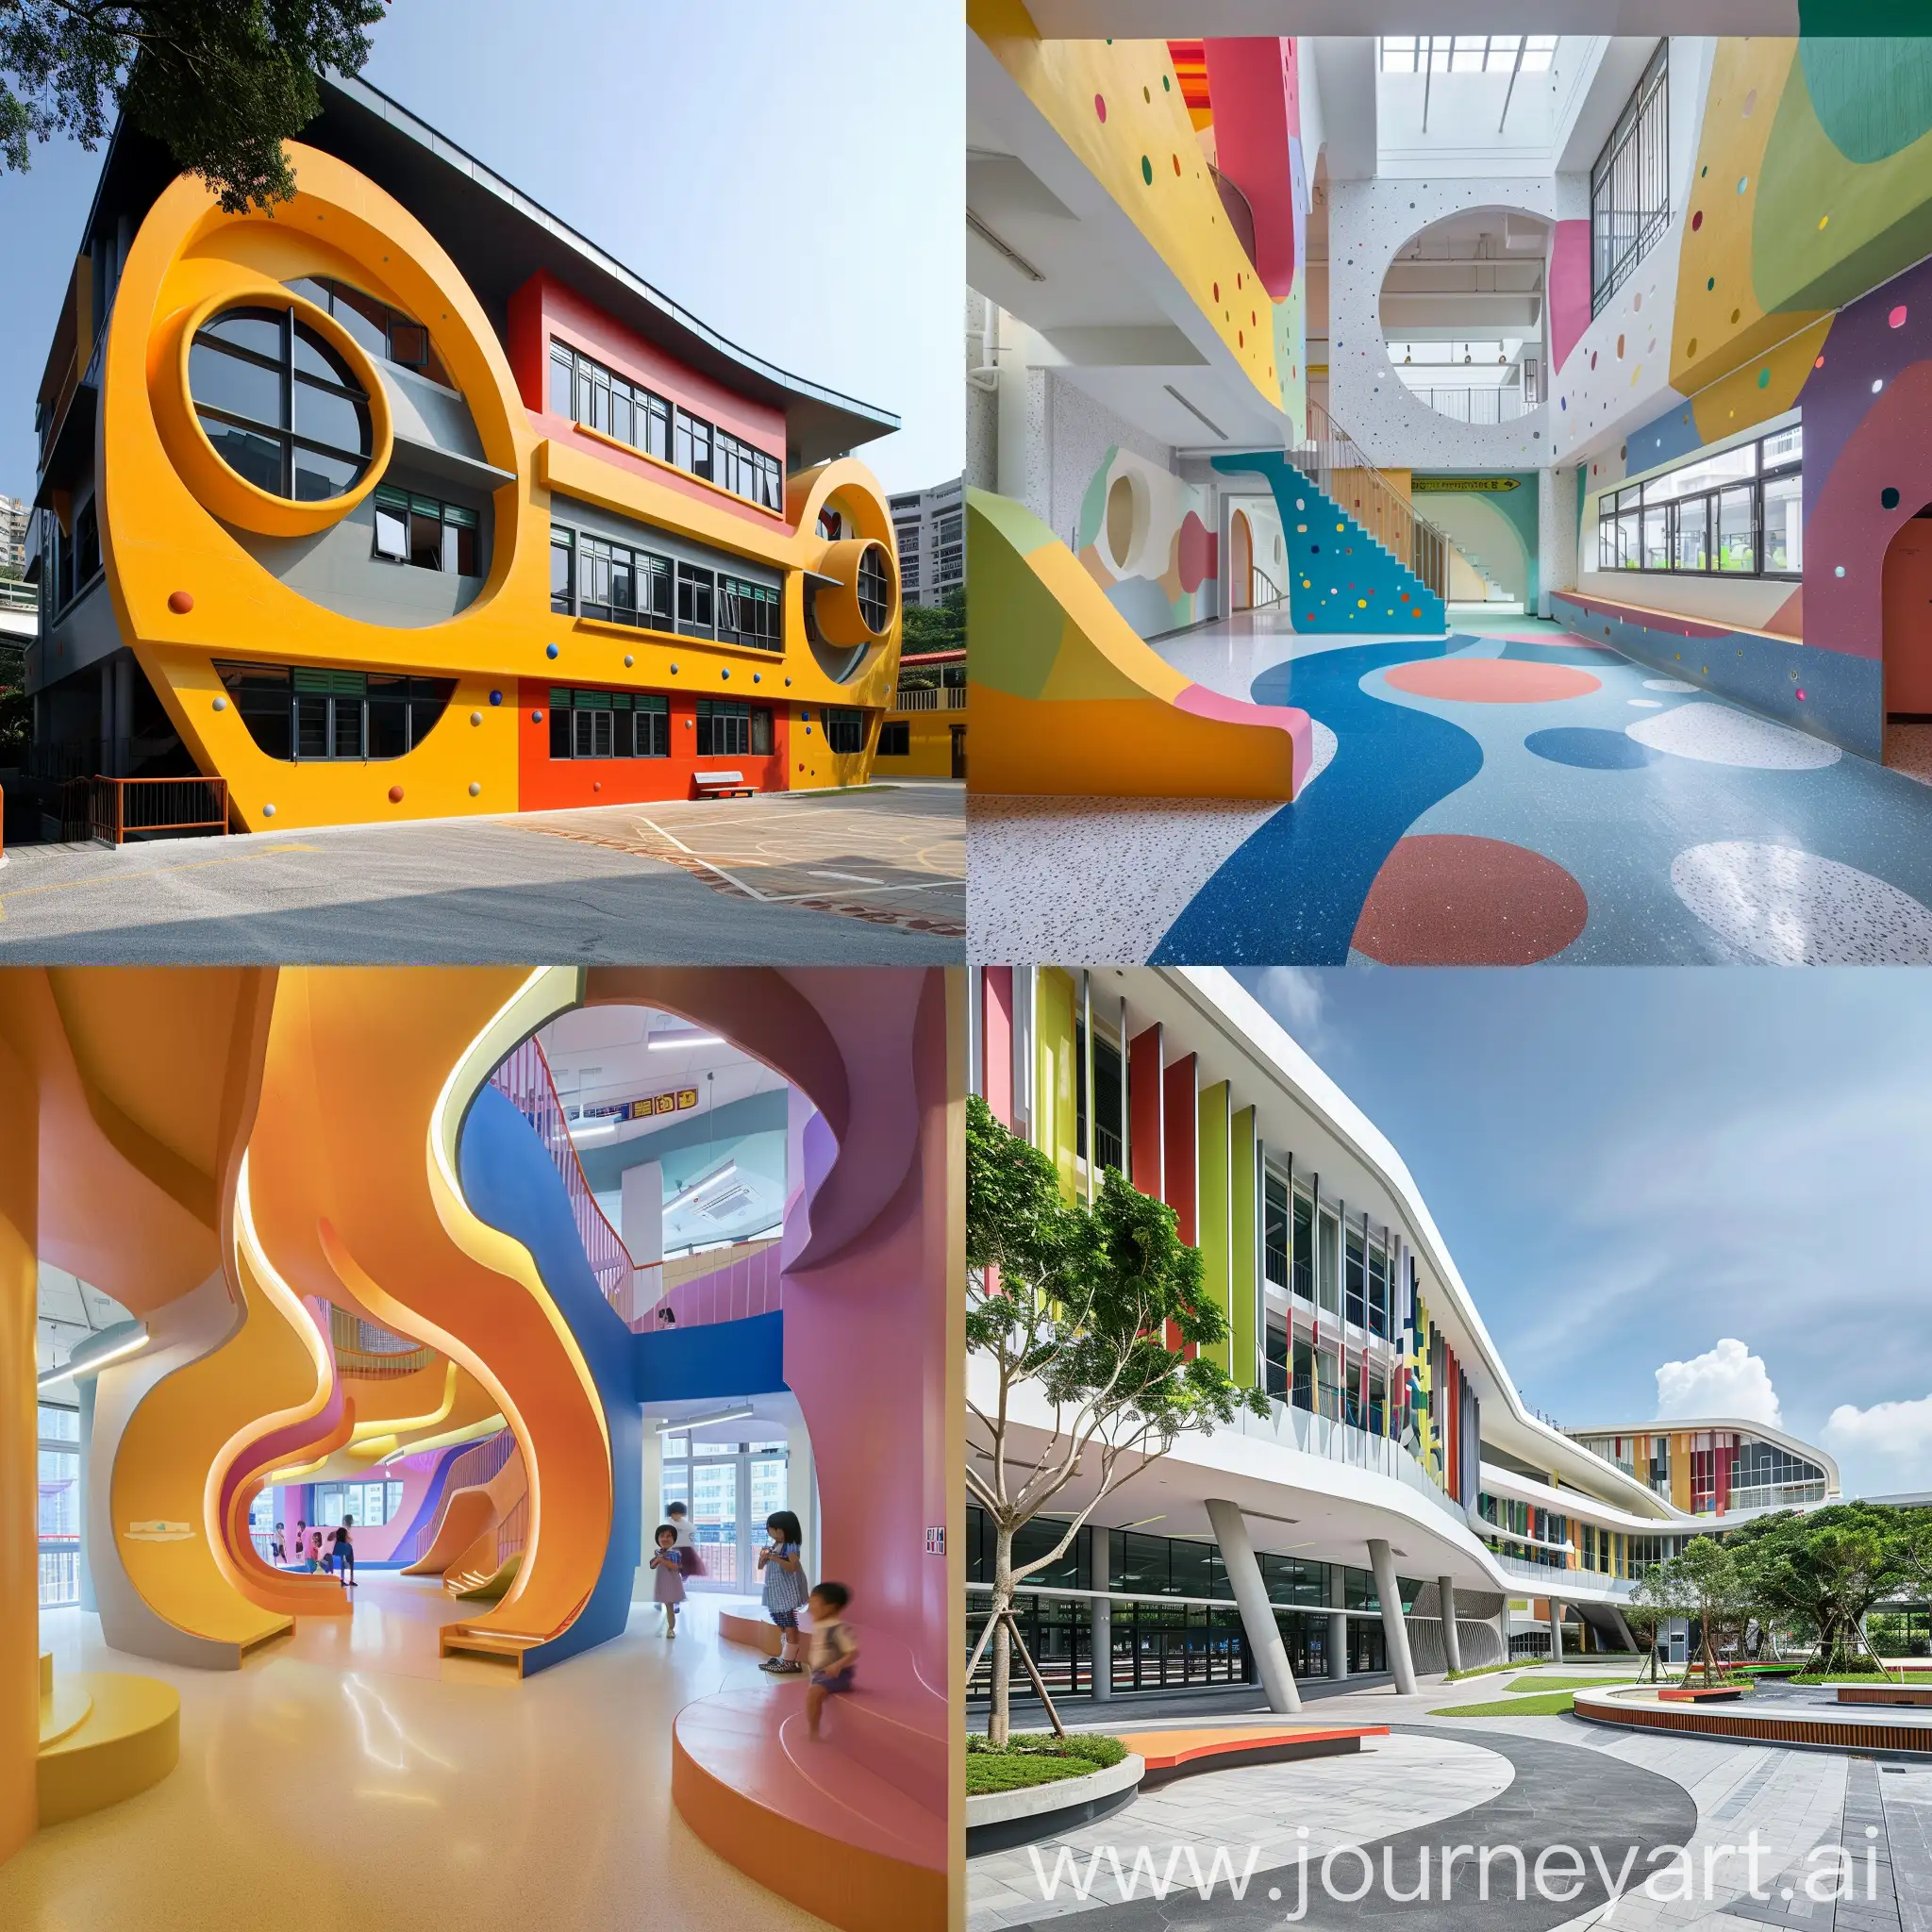 Fung kei millennium primary school cool design